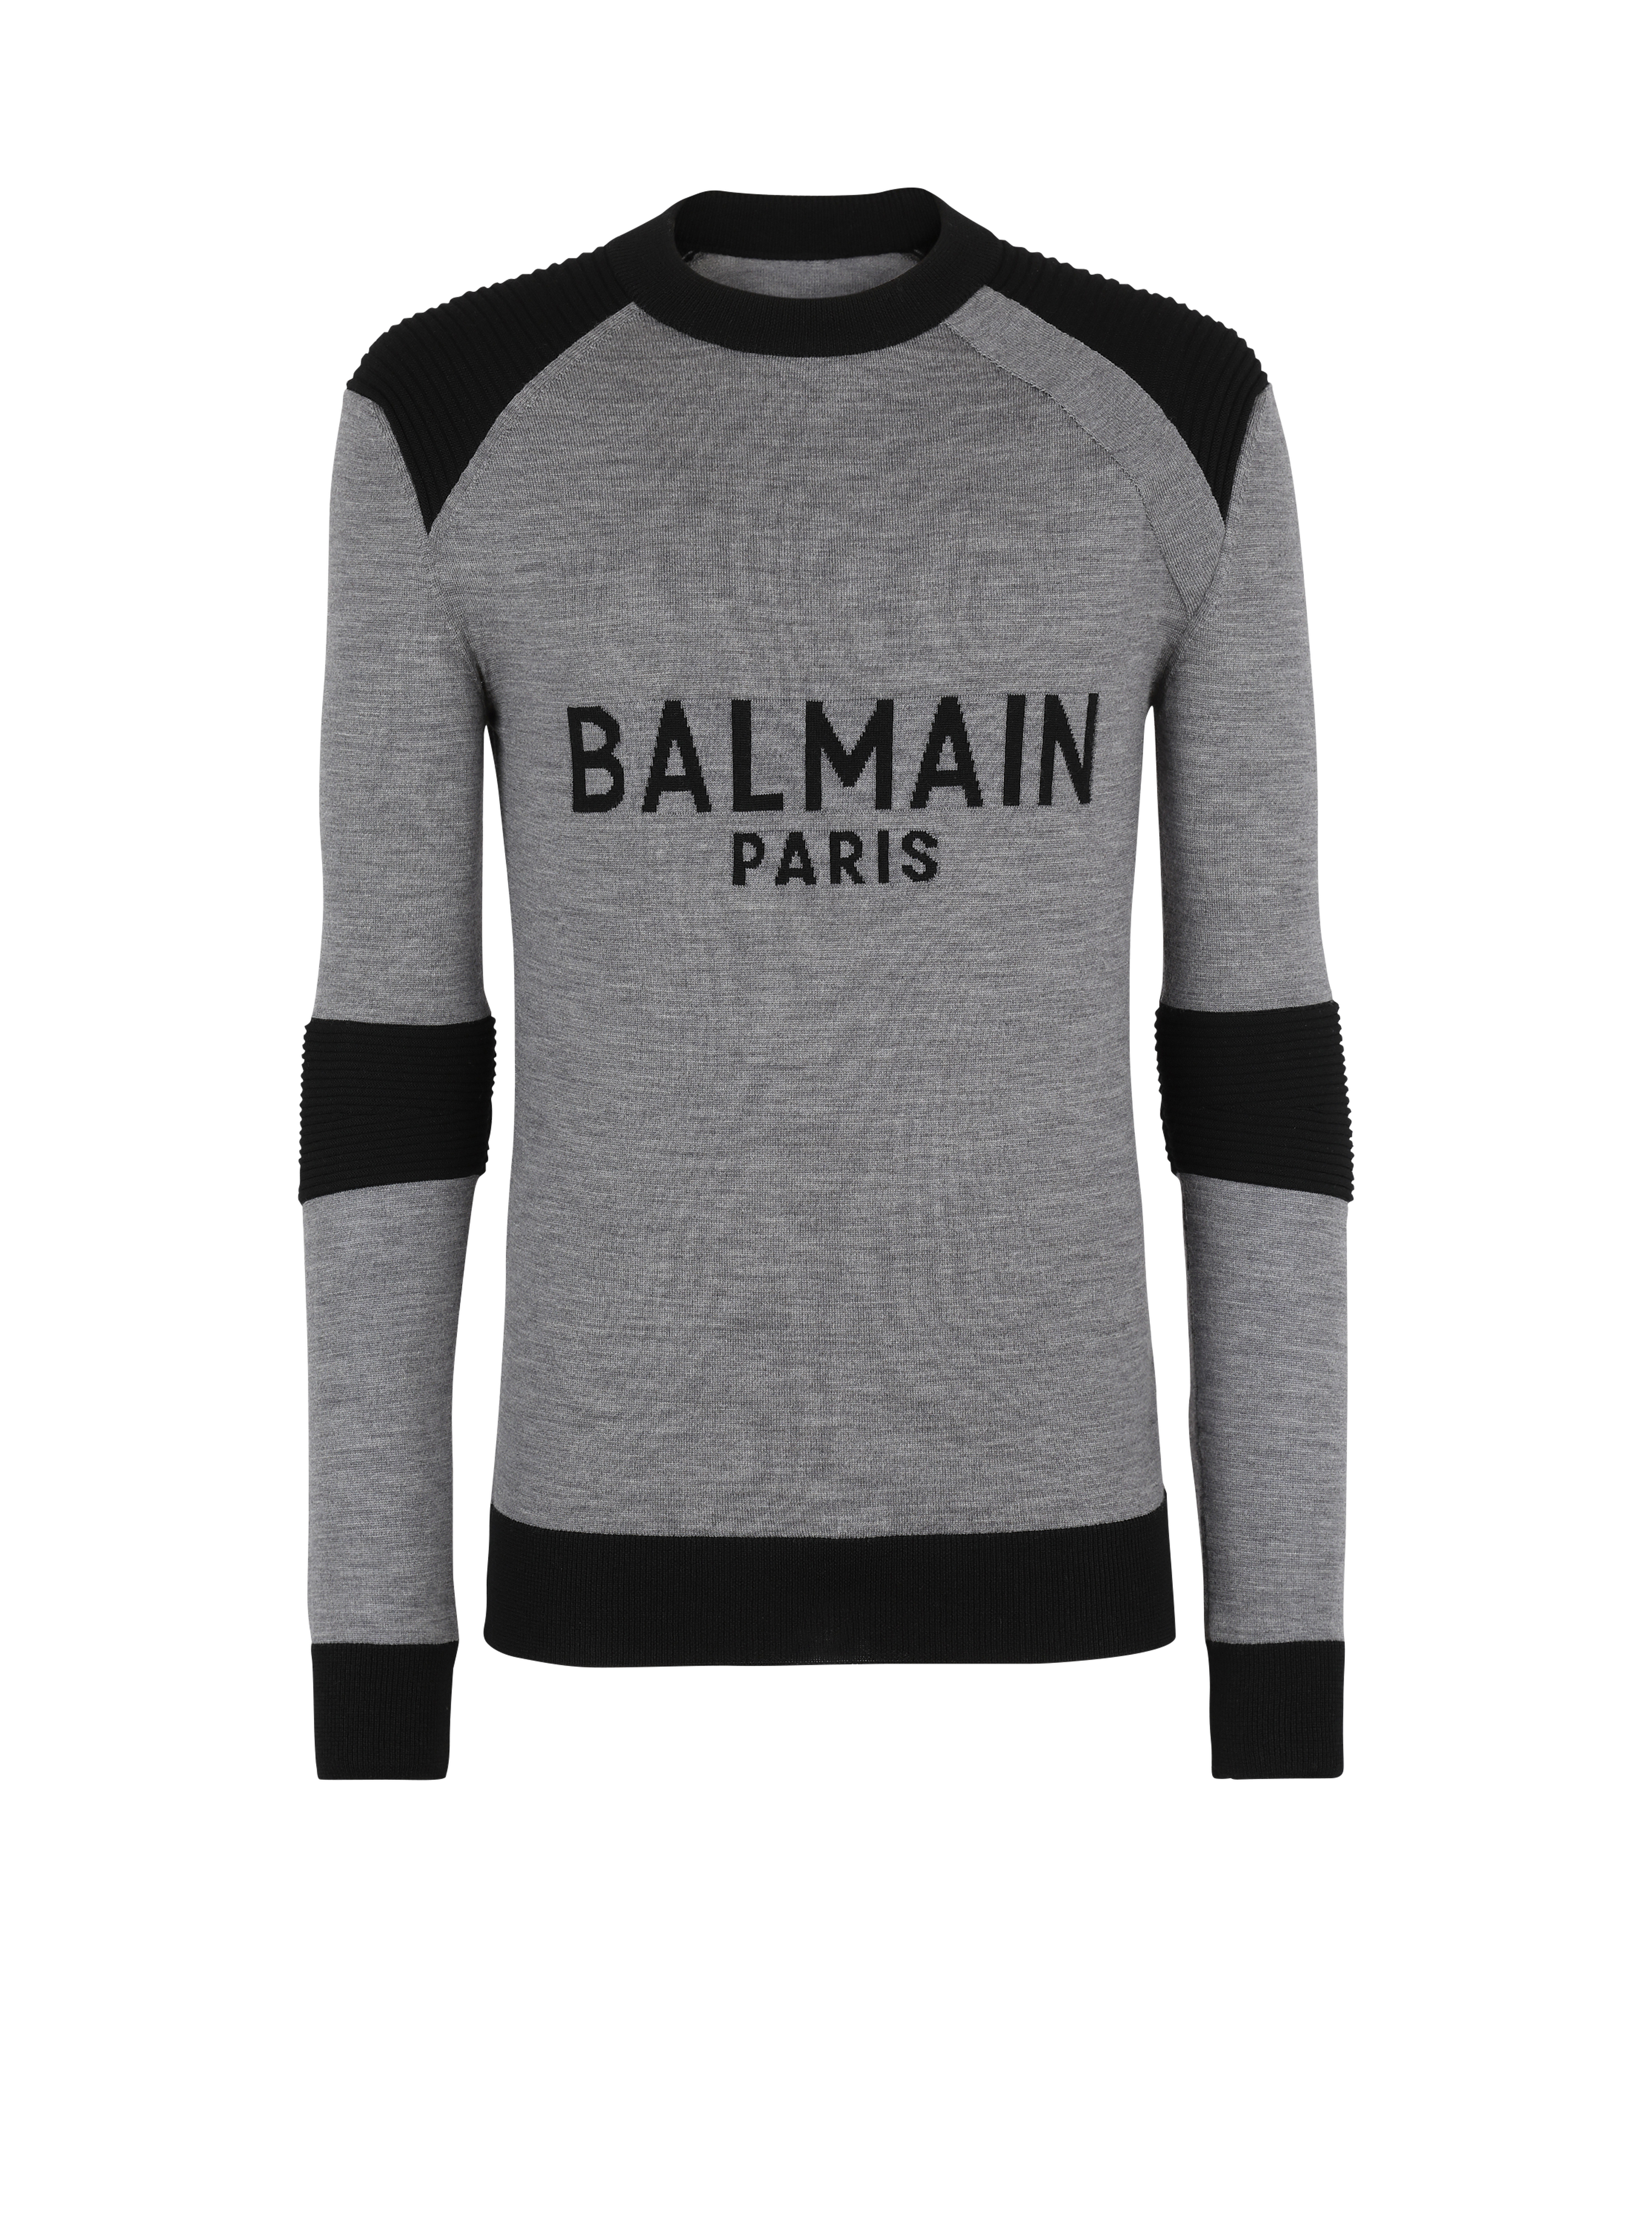 Balmain Paris标志羊毛套头衫, grey